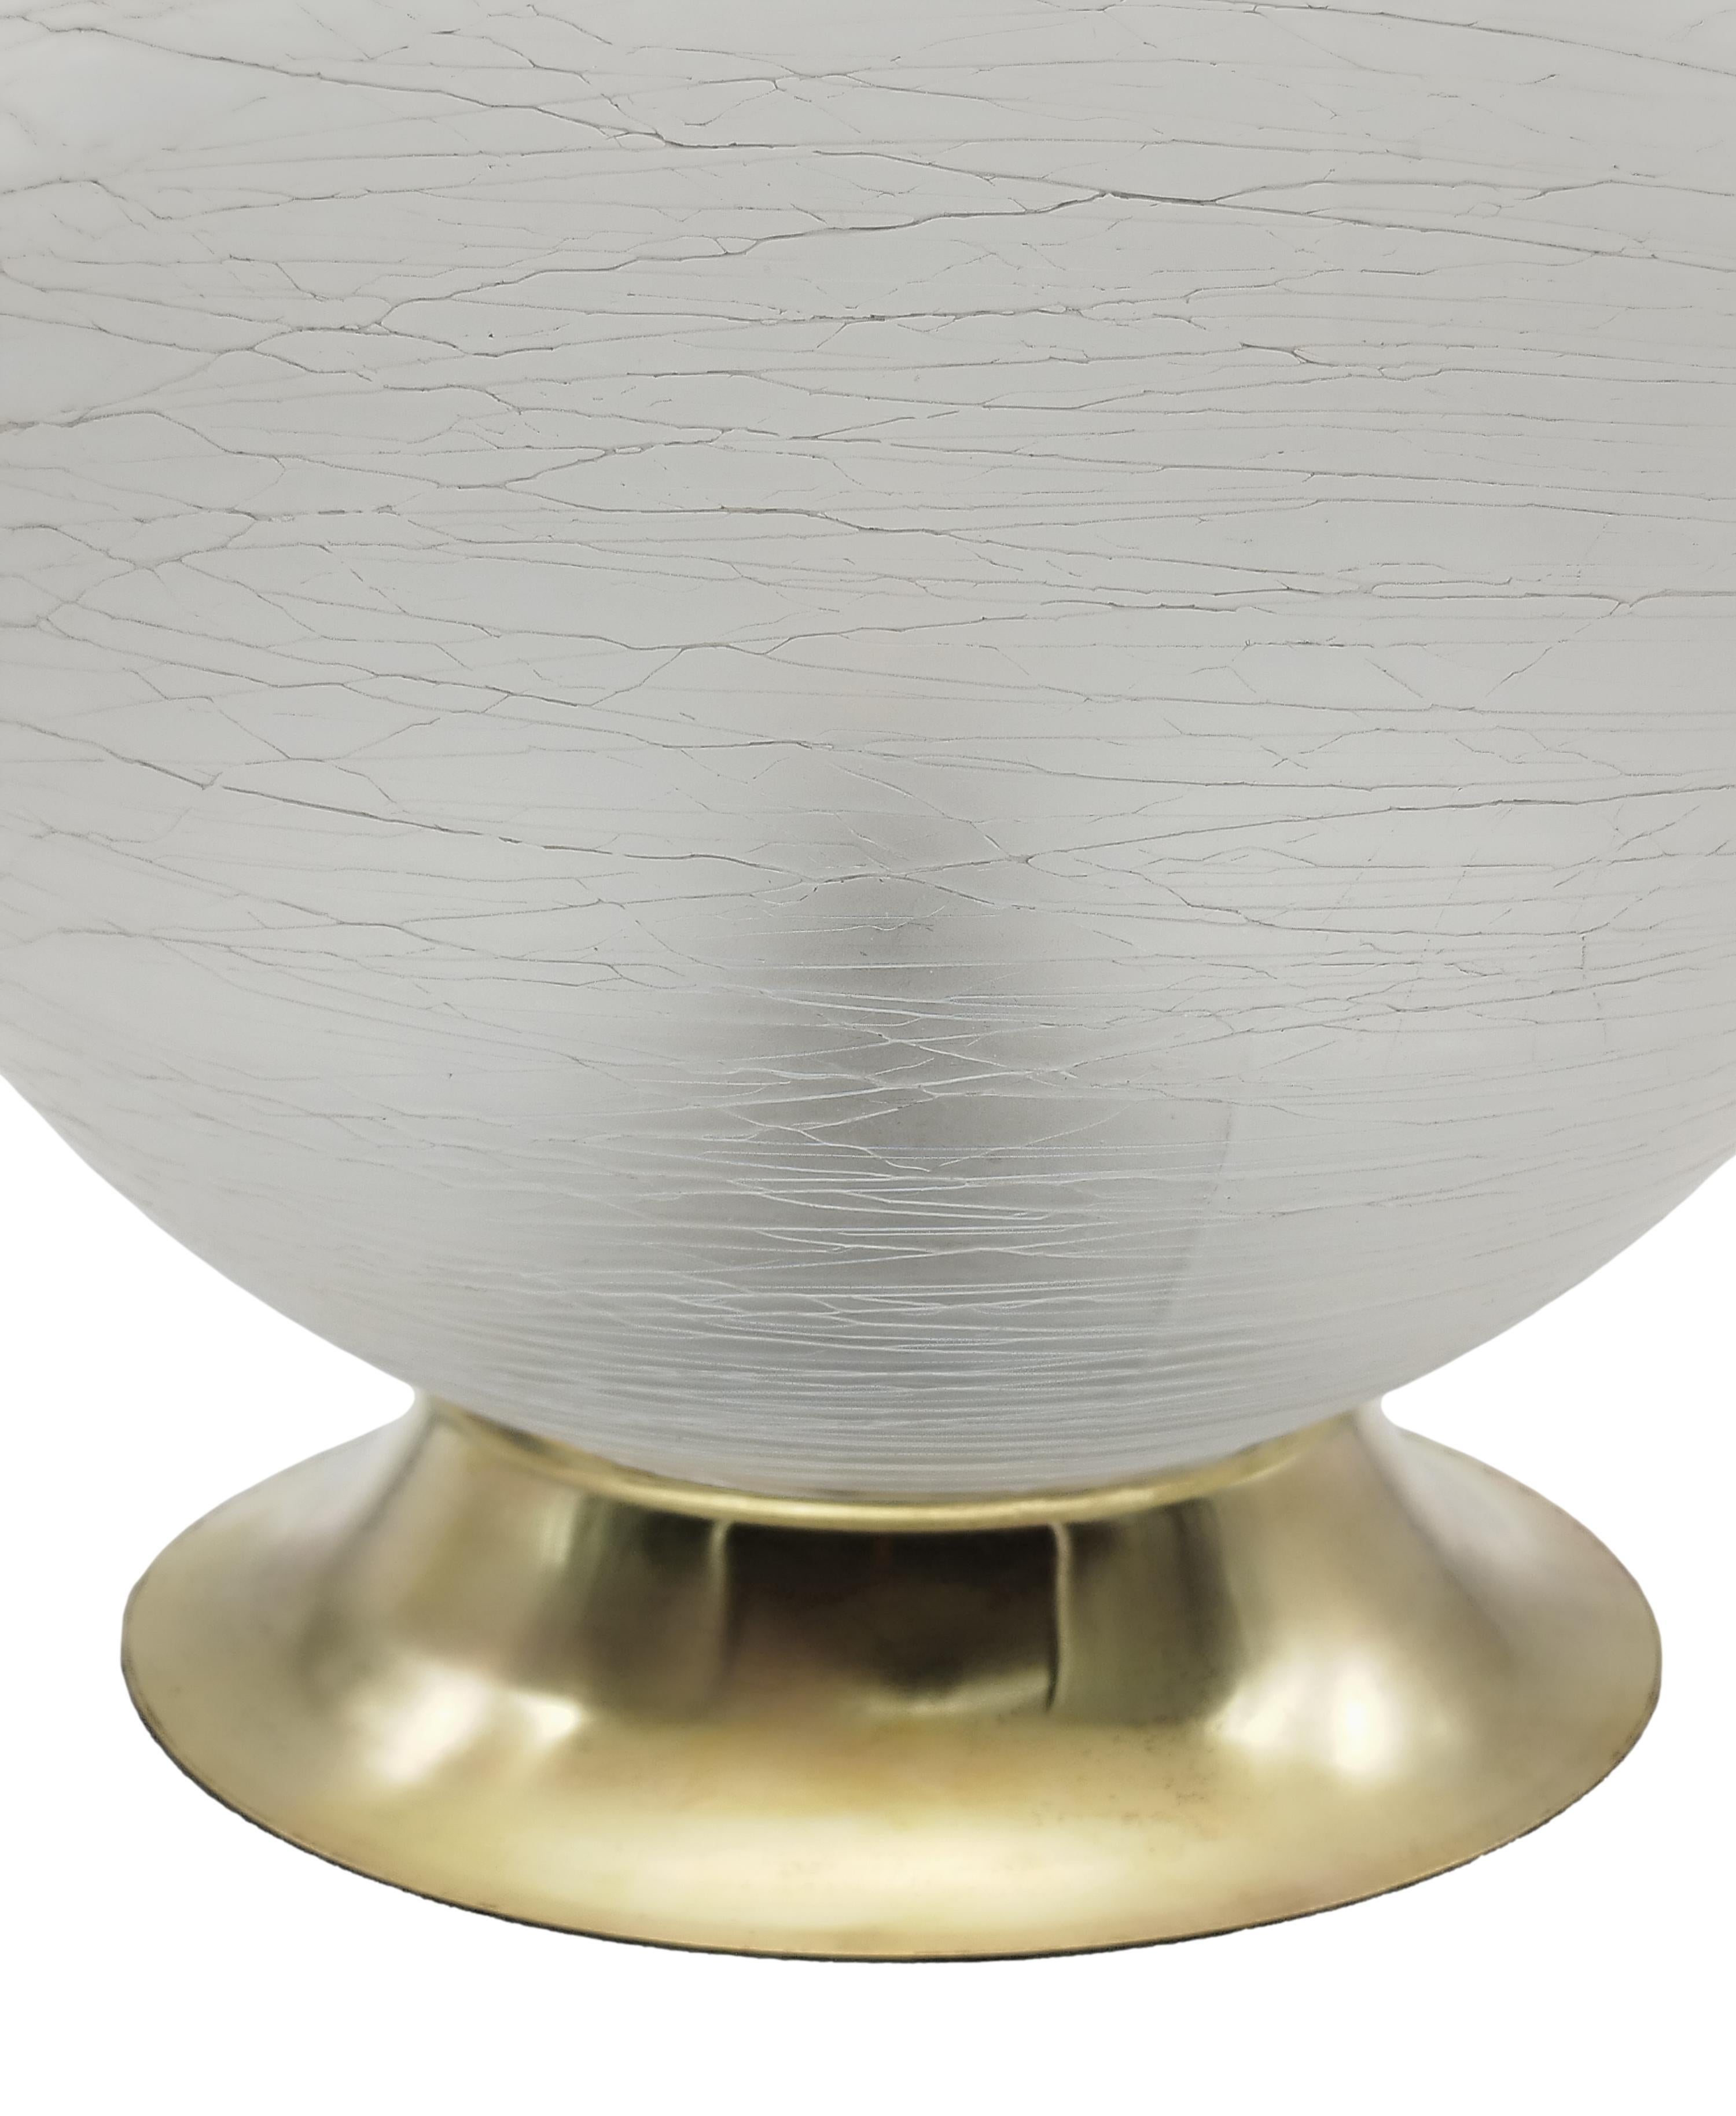 Kugellampe aus Murano-Glas mit Craquele-Effekt auf Messingfuß, im Stil von Venini.